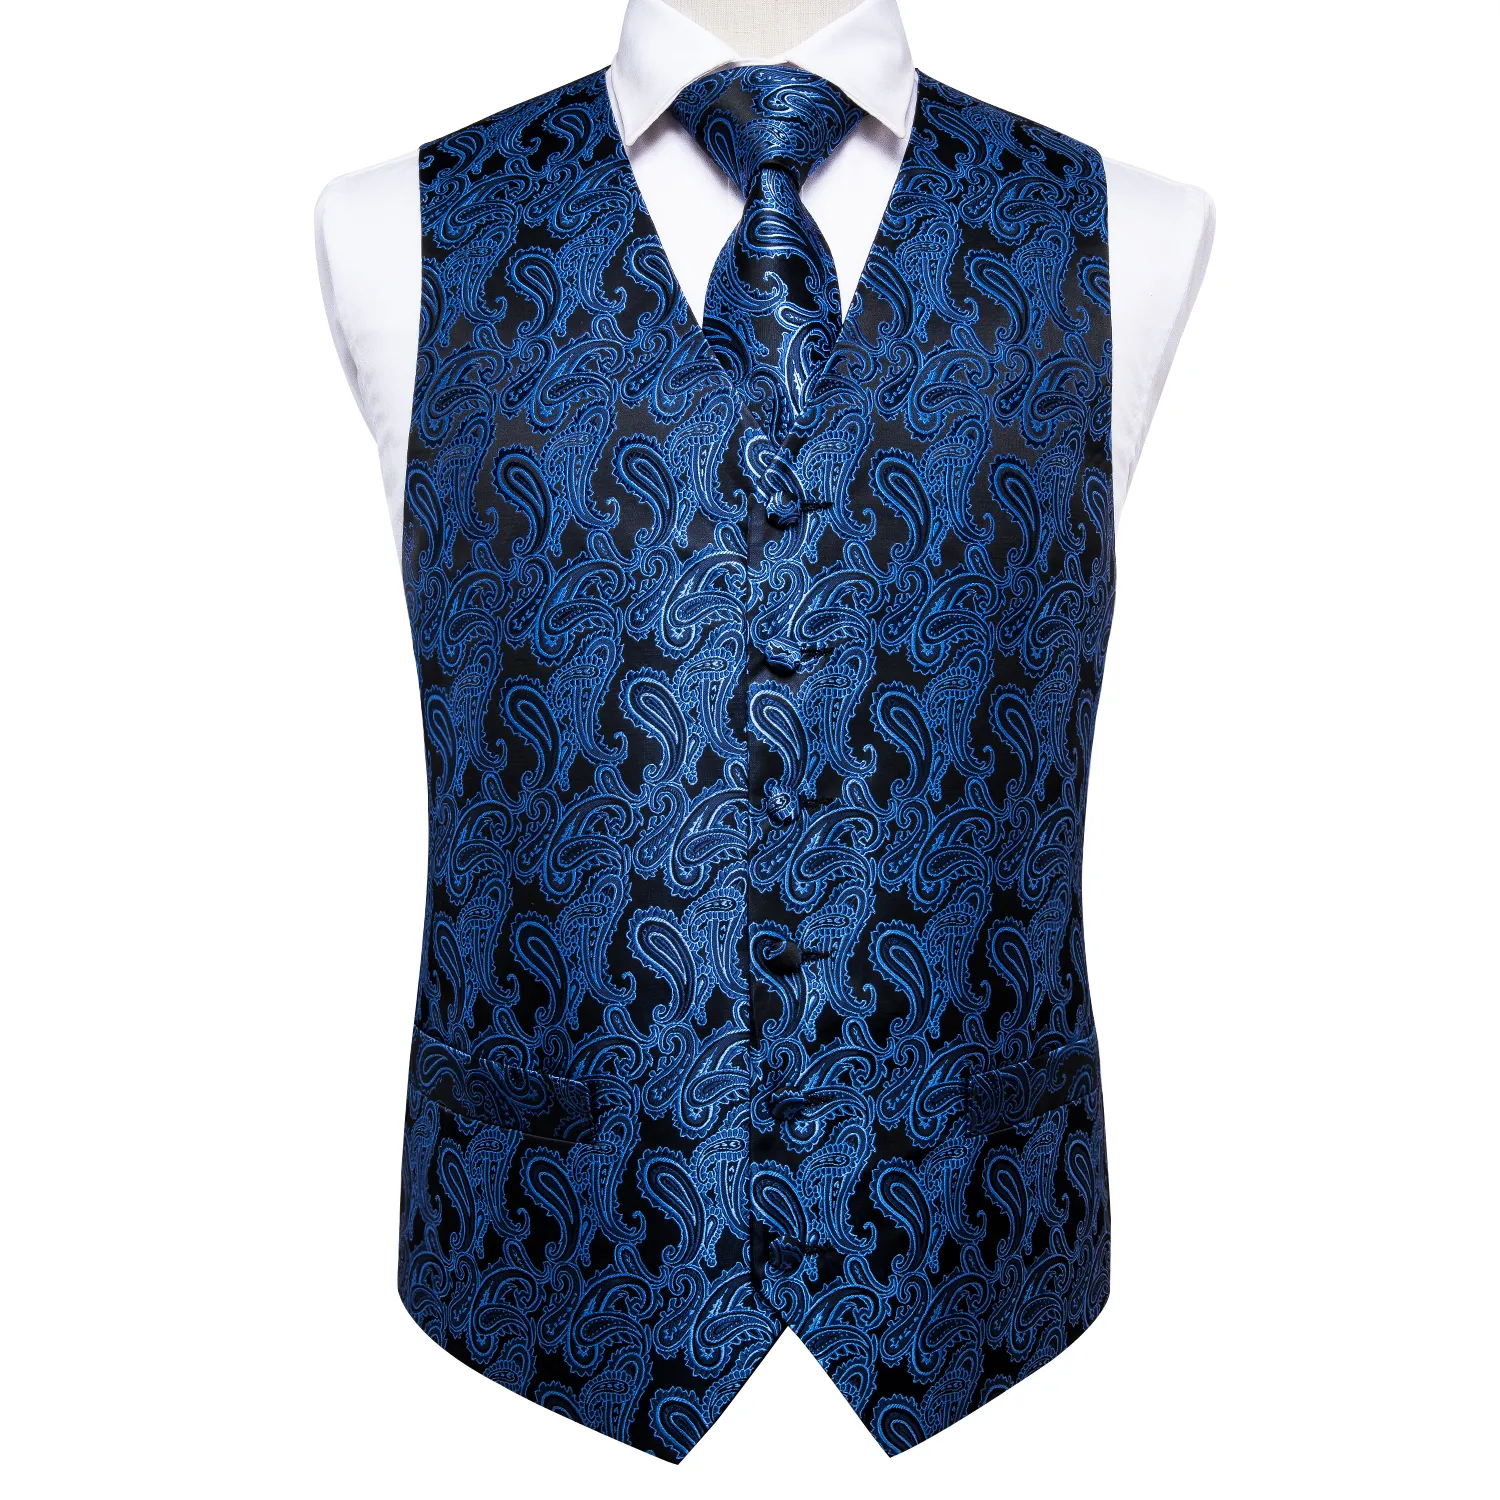 Schneller Versand Männer blauer Paisley Silk Jacquard-Westen-Weste Krawatte Einstecktuch Manschettenknöpfe Set Mode-Partei-Hochzeit MJ-0010